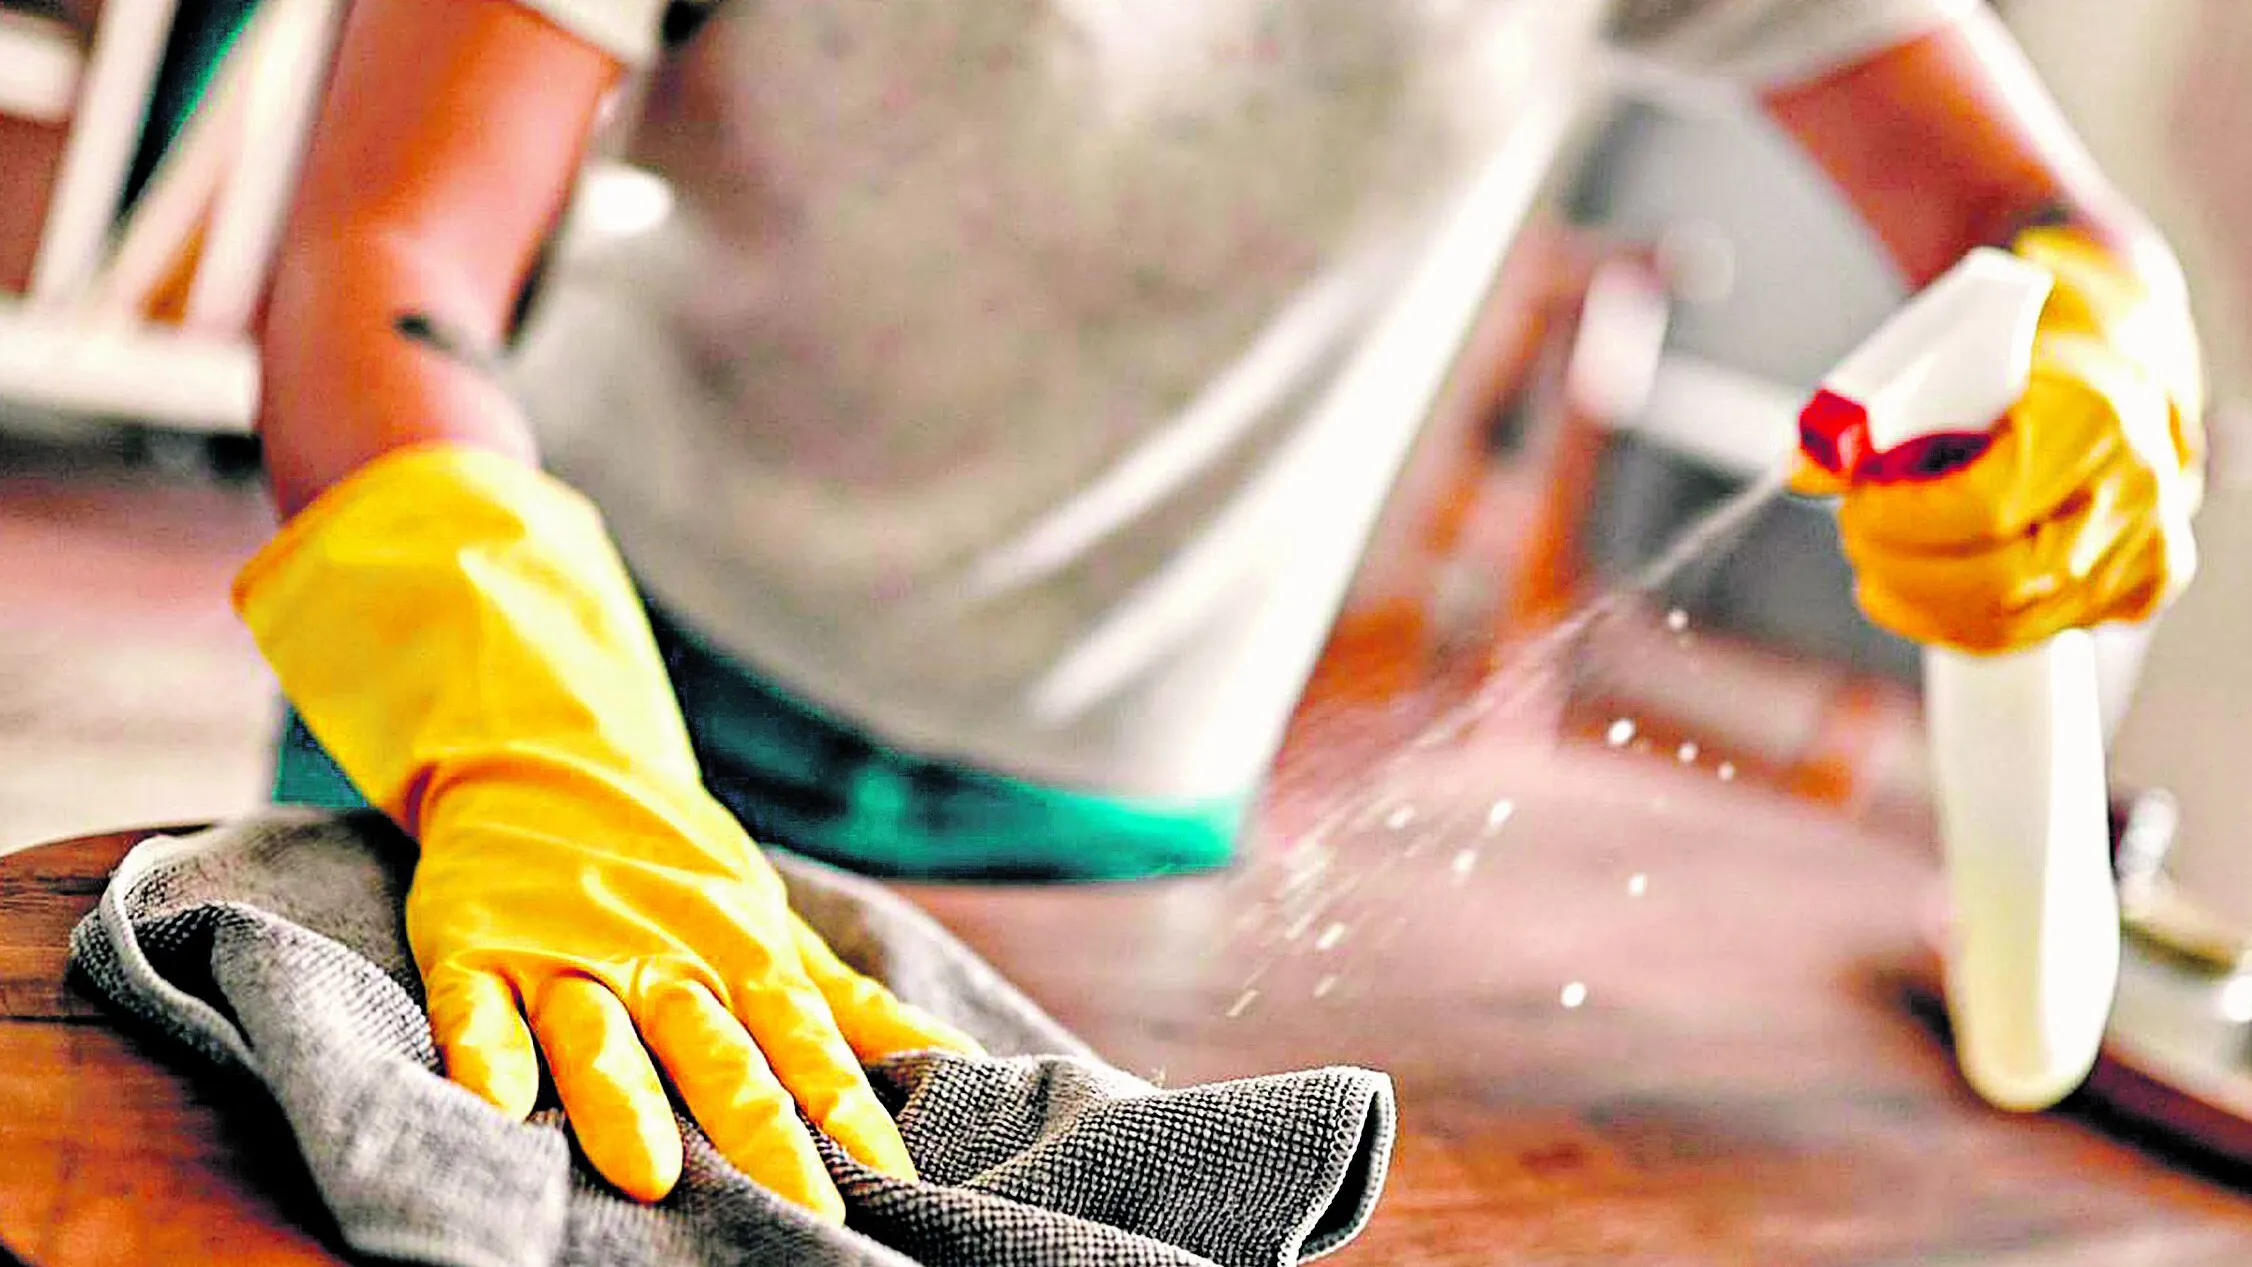 Os trabalhadores domésticos têm vários direitos trabalhistas que precisam ser respeitados